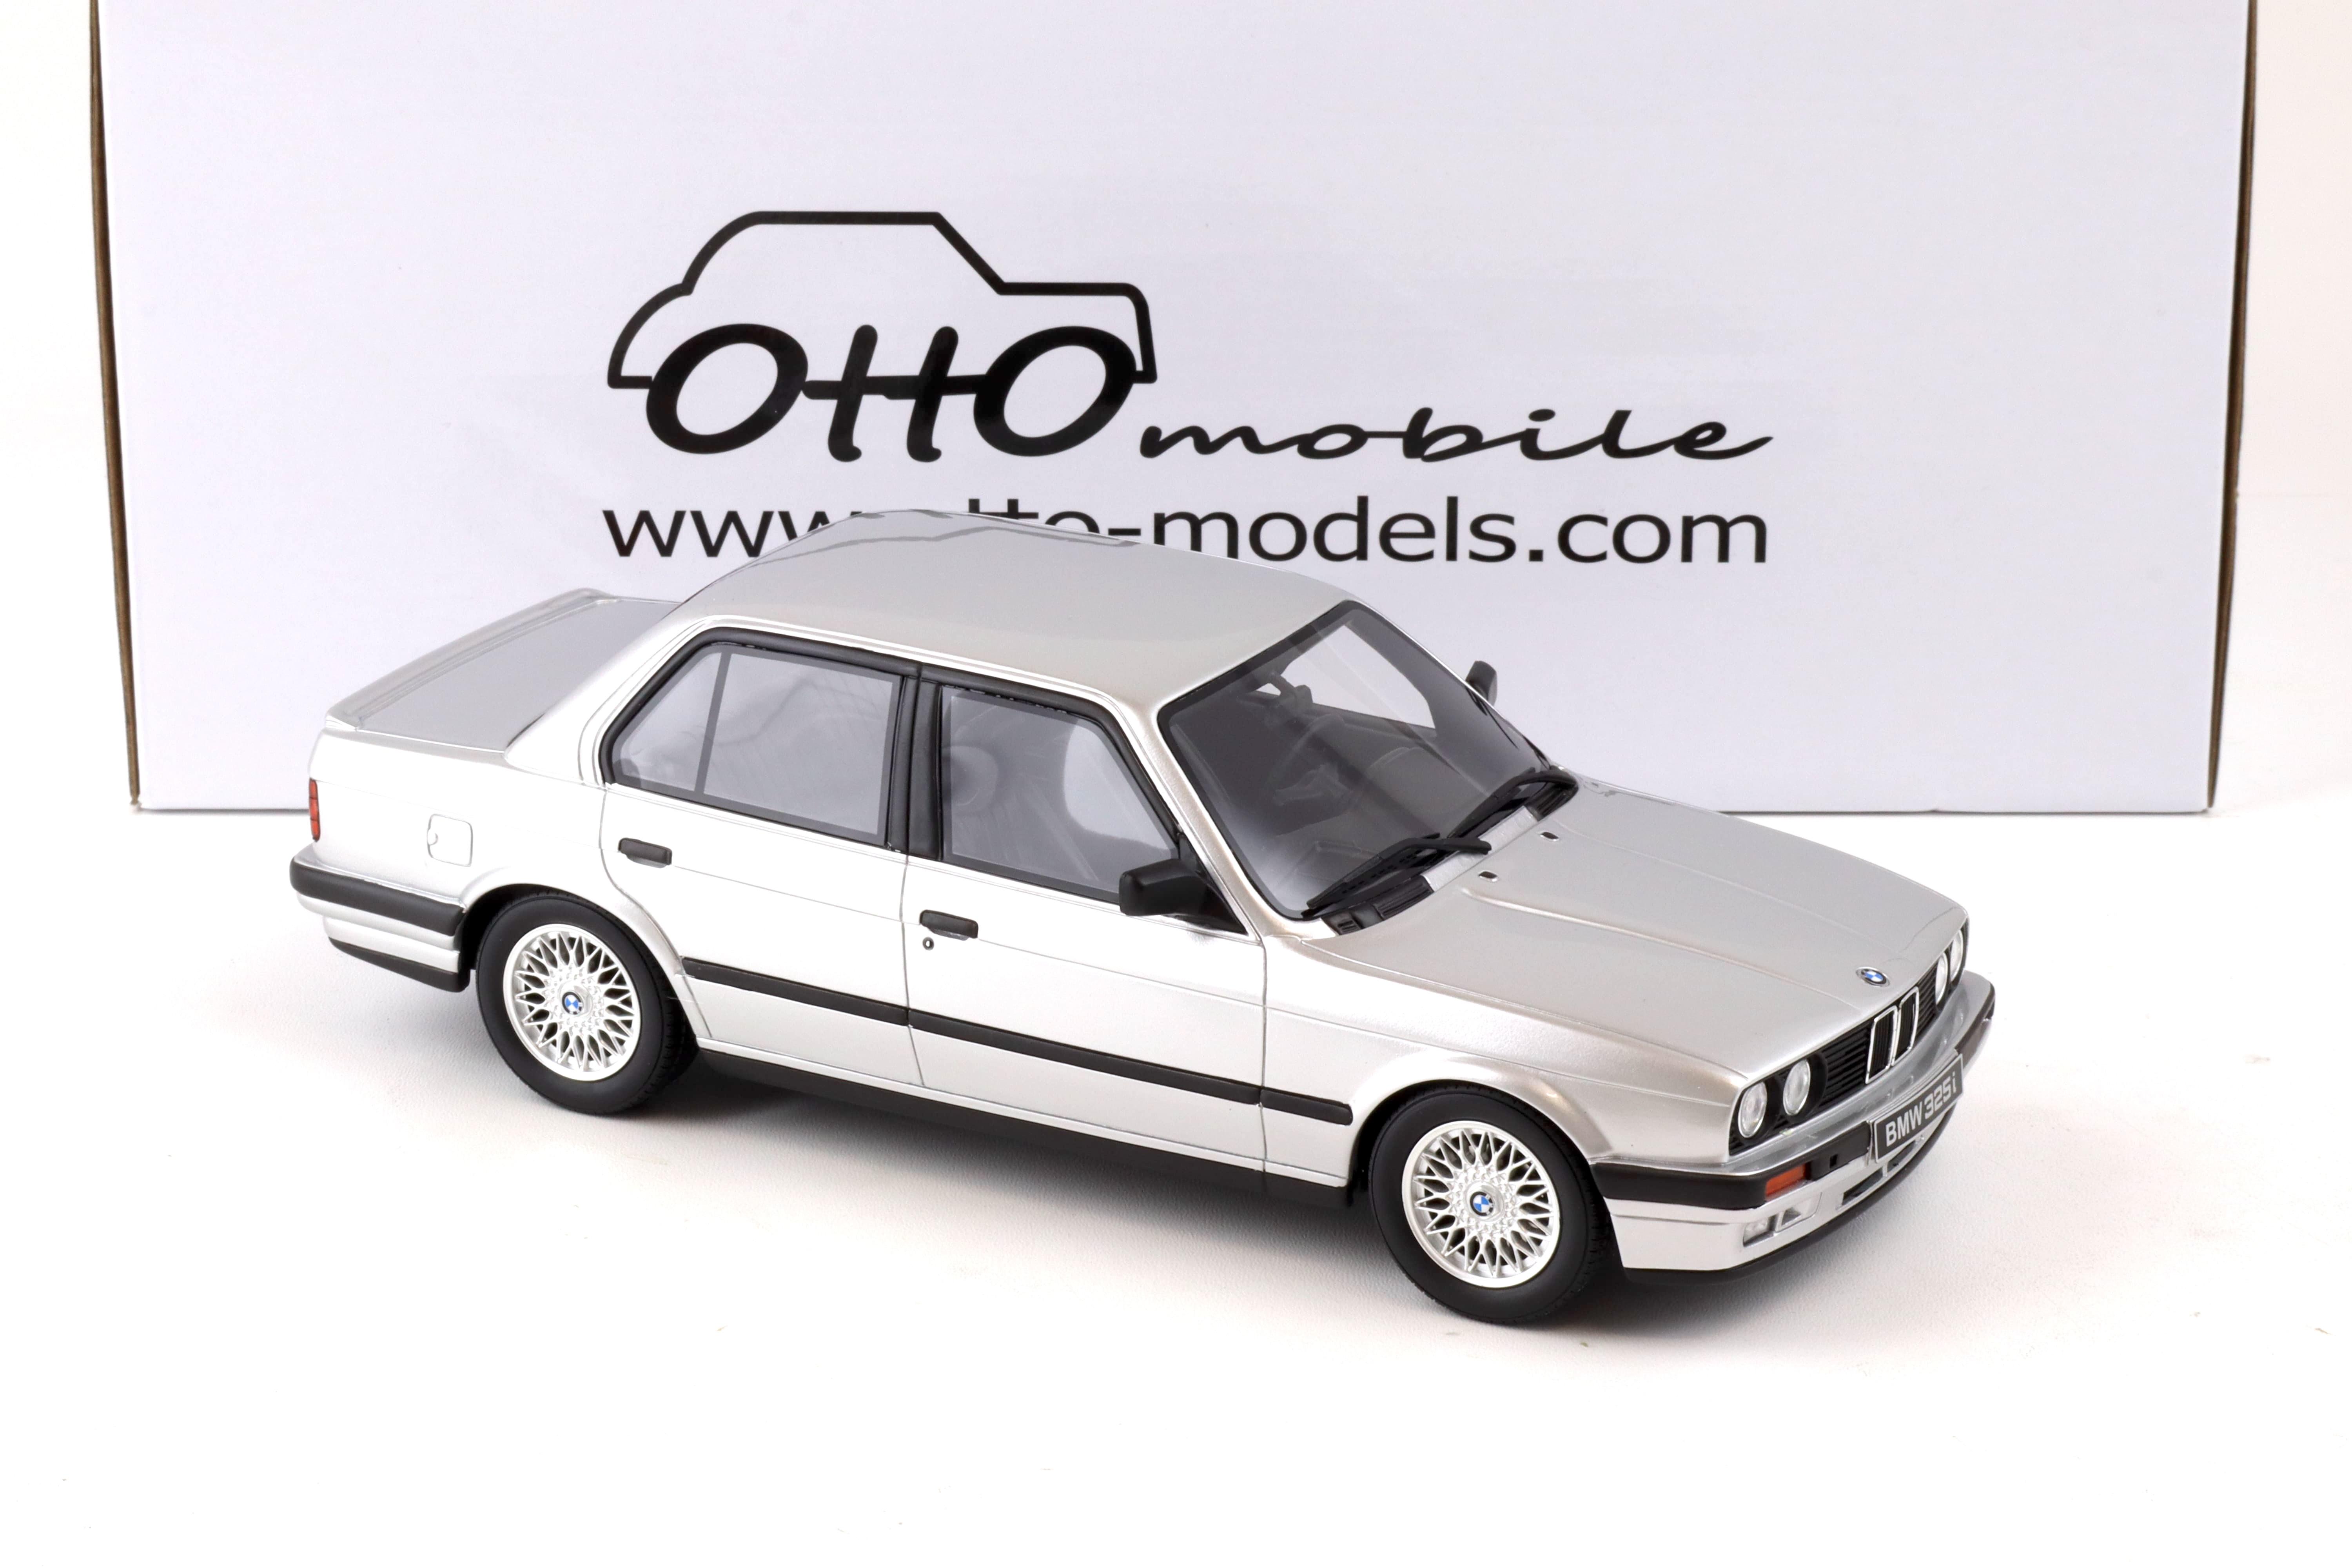 1:18 OTTO mobile OT912 BMW 325i E30 Sedan silver 1988